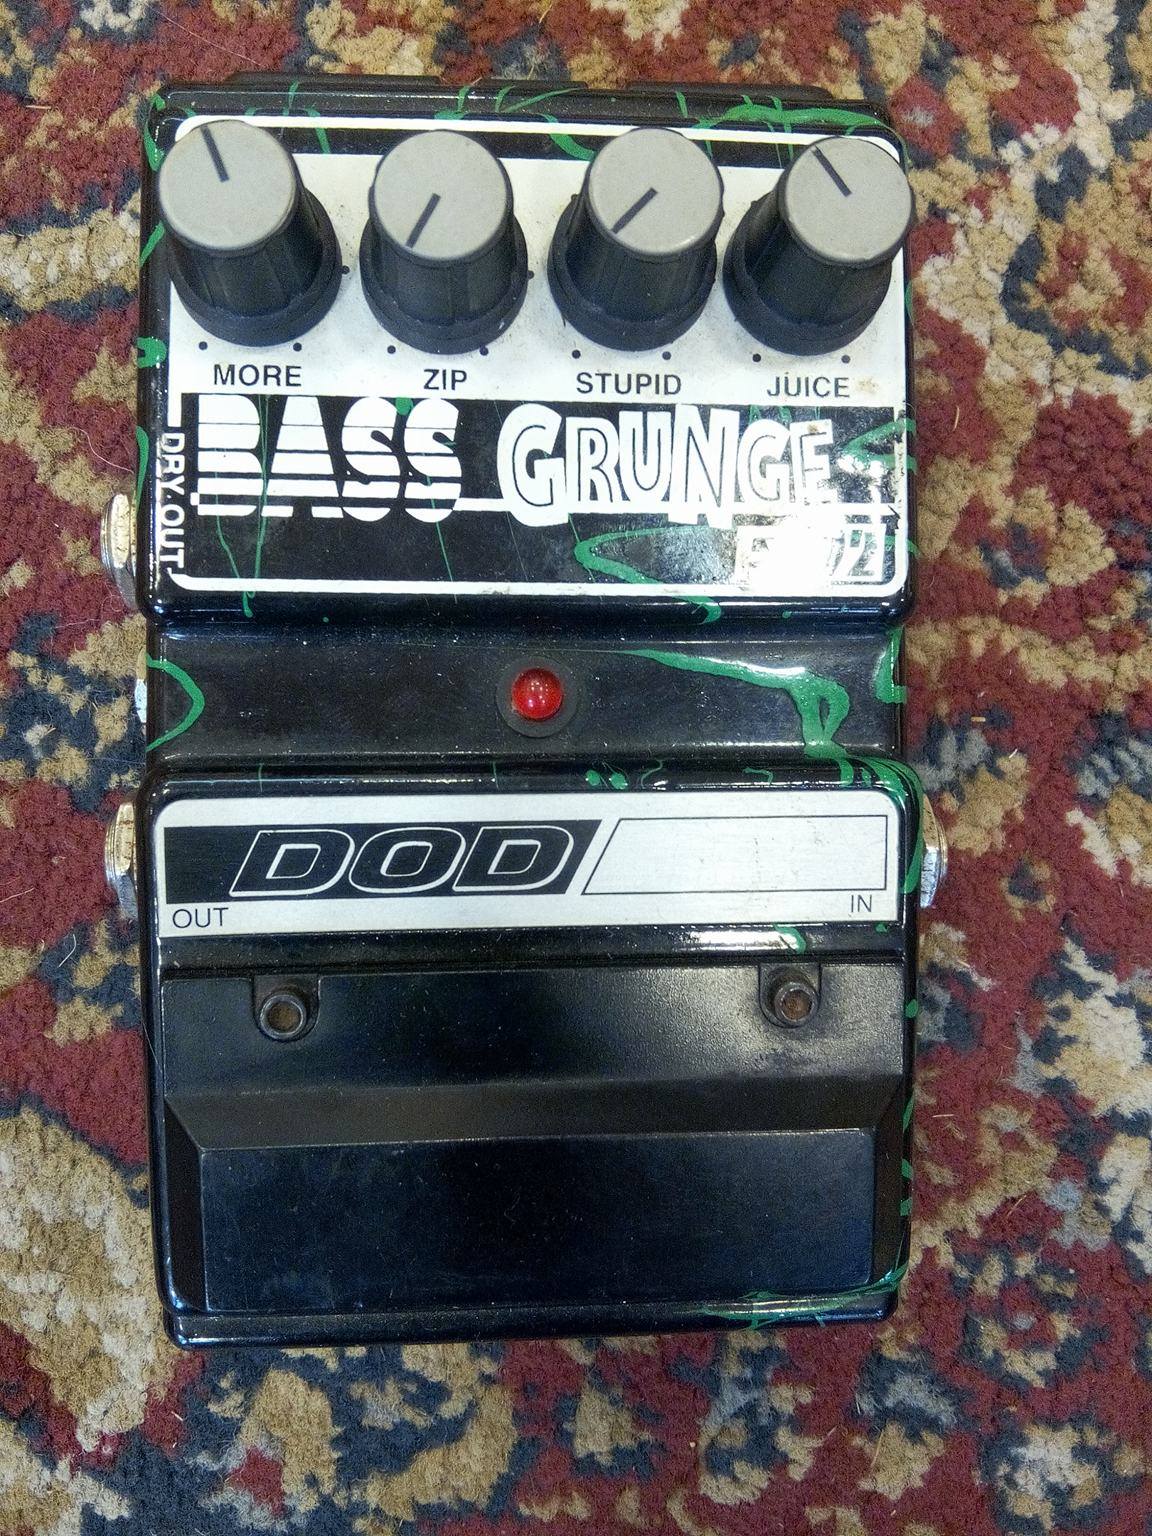 Dod Bass Grunge Fx92